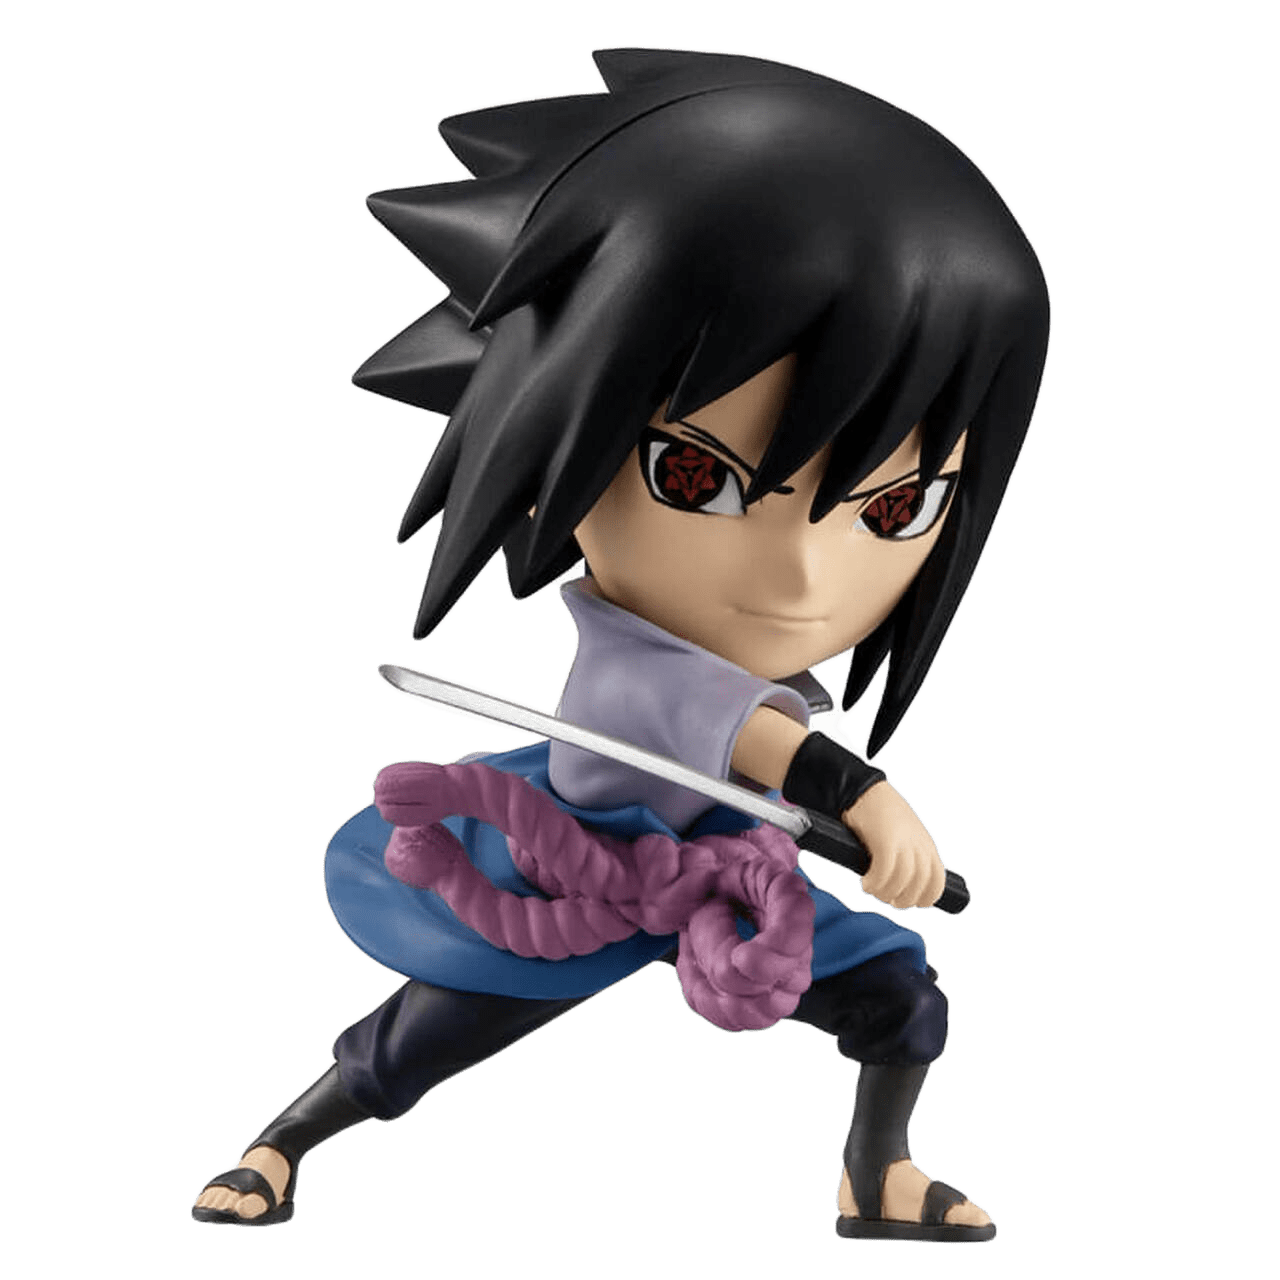 Anime Action Figure Uchiha Sasuke Childhood Standing Sasuke Model